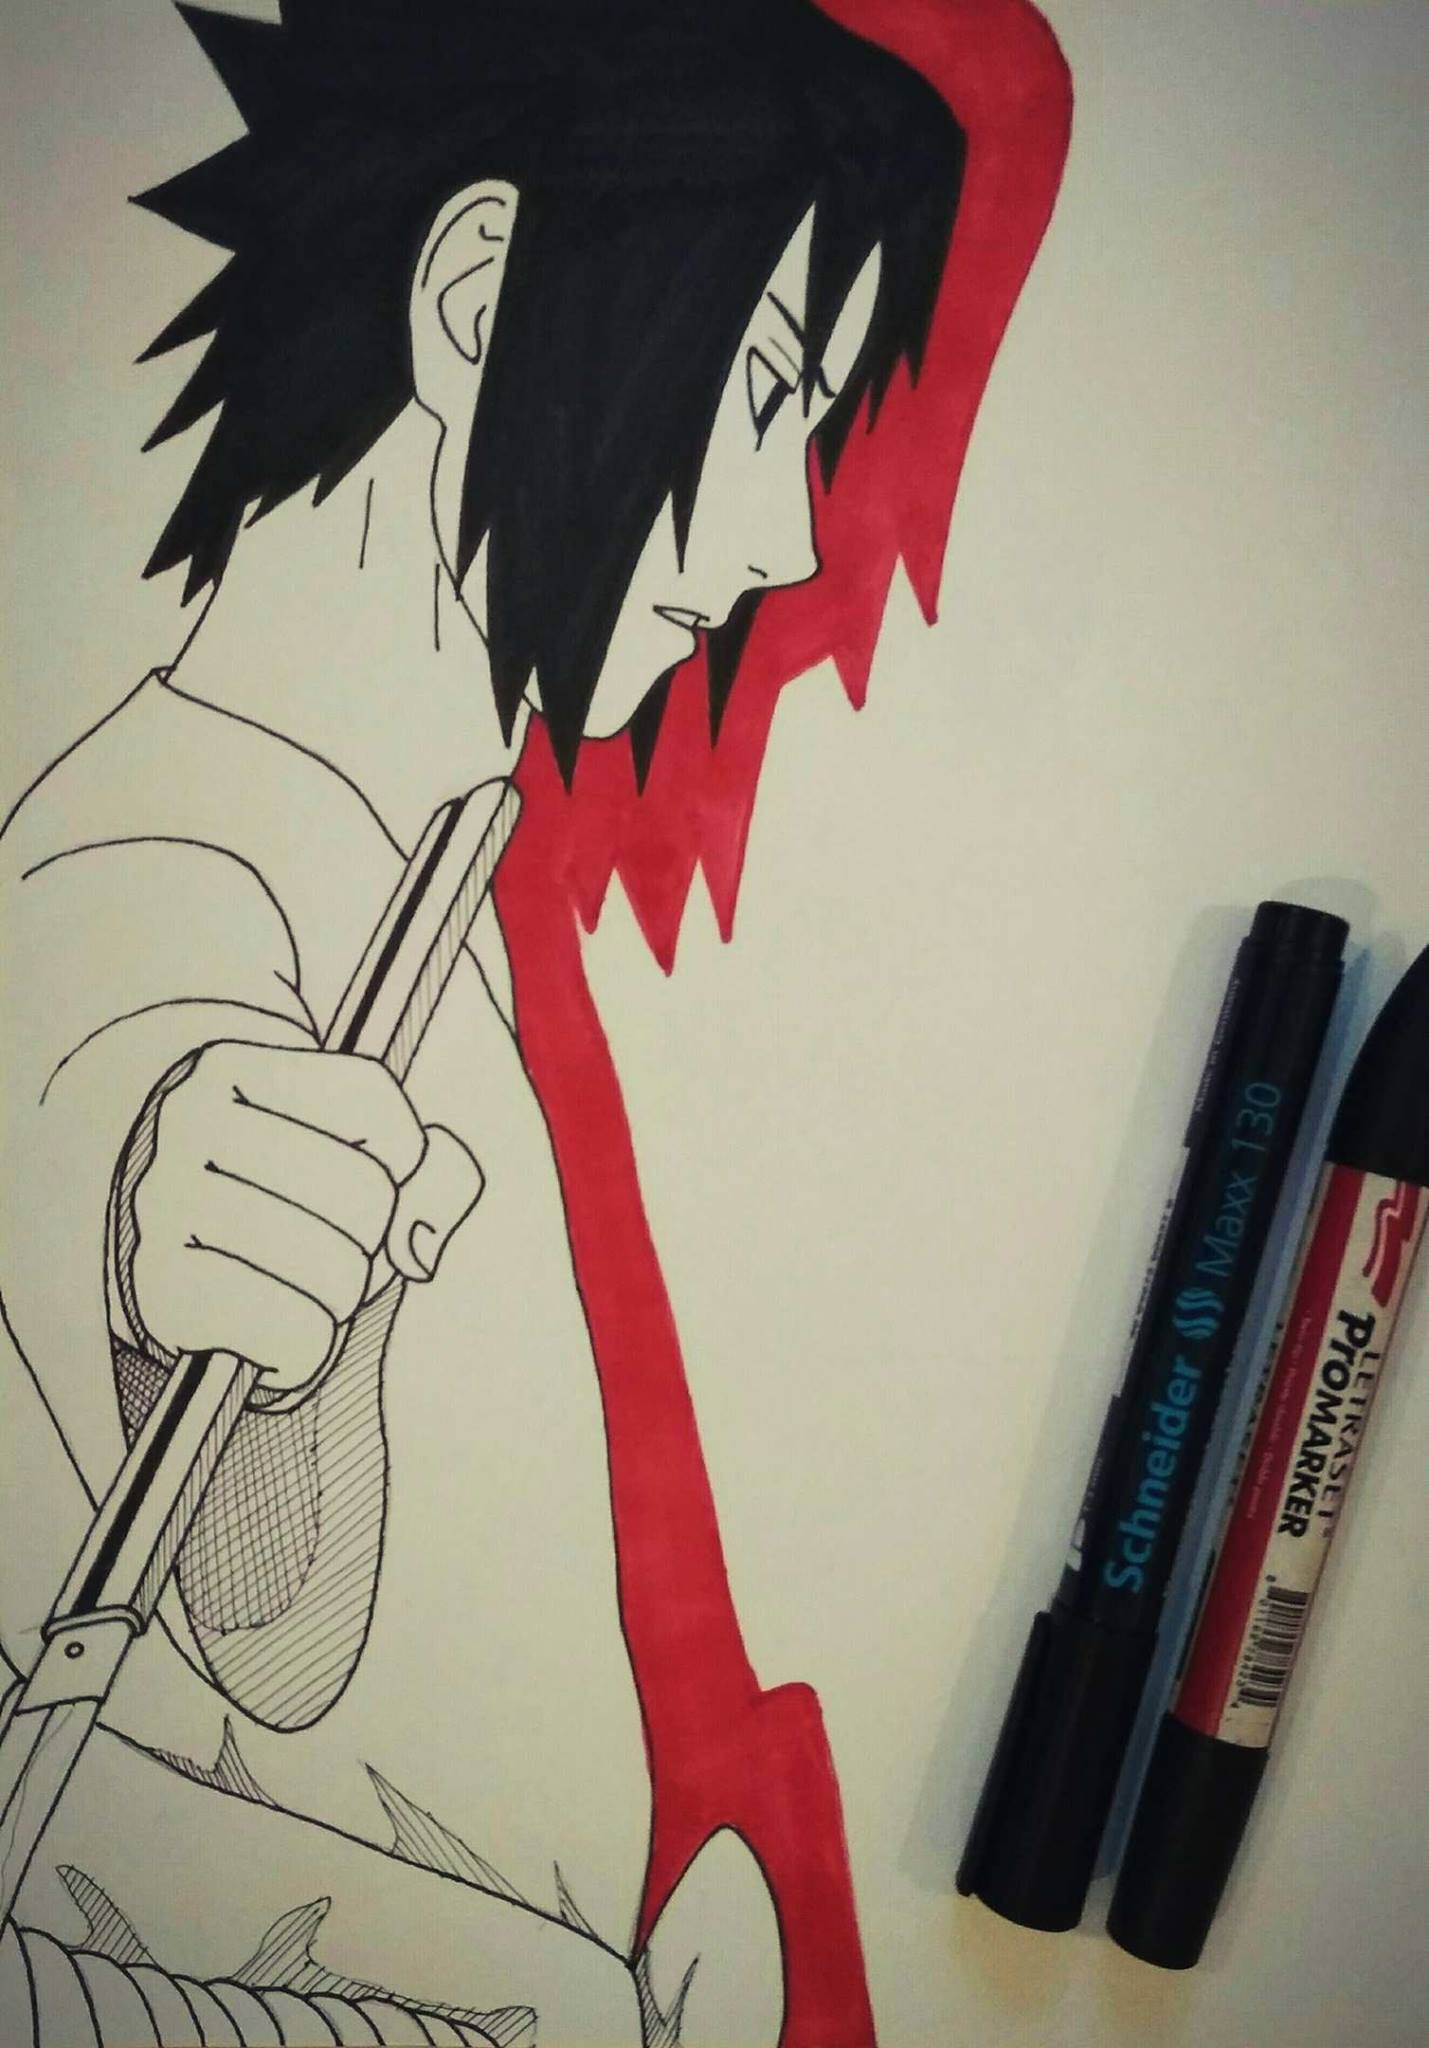 Art - Sasuke Uchiha drawing his sword "Naruto series ...